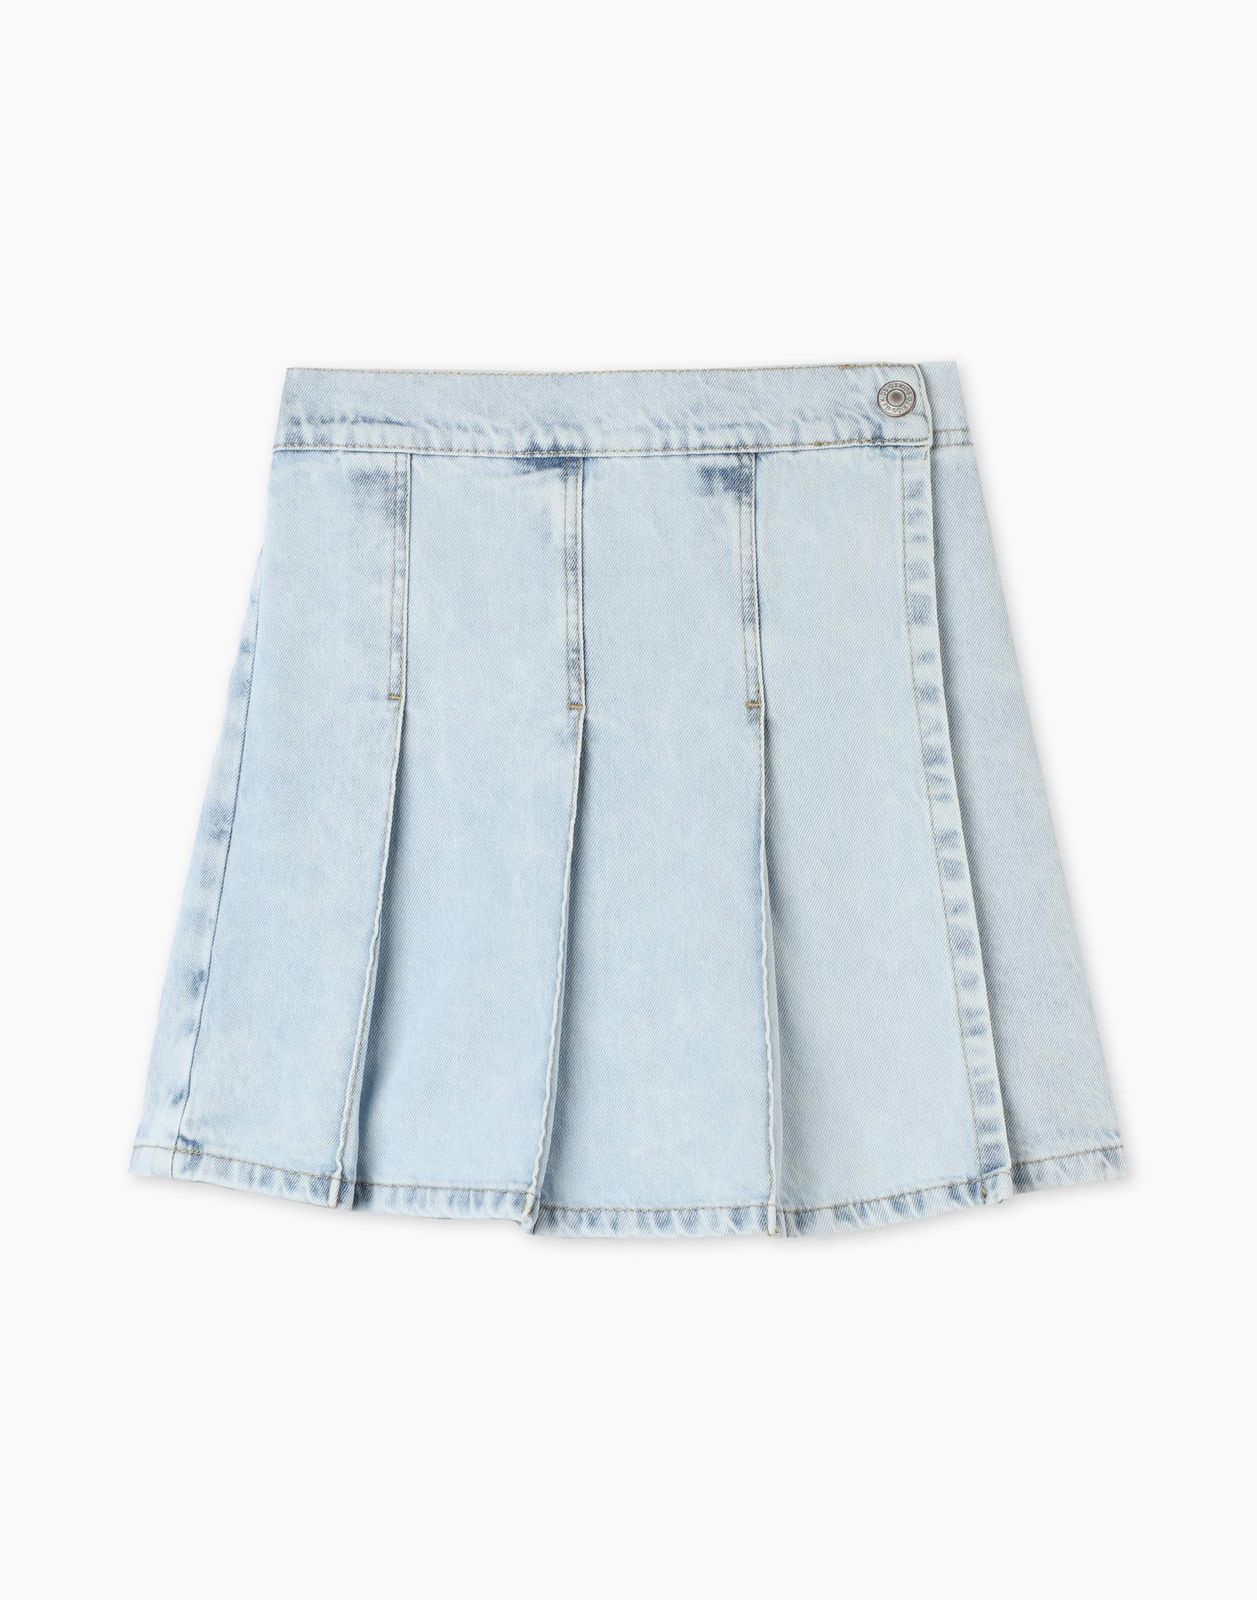 Джинсовая юбка-шорты Gloria Jeans GSK018325 6-8л/122-128 для девочки асимметричная джинсовая юбка шорты